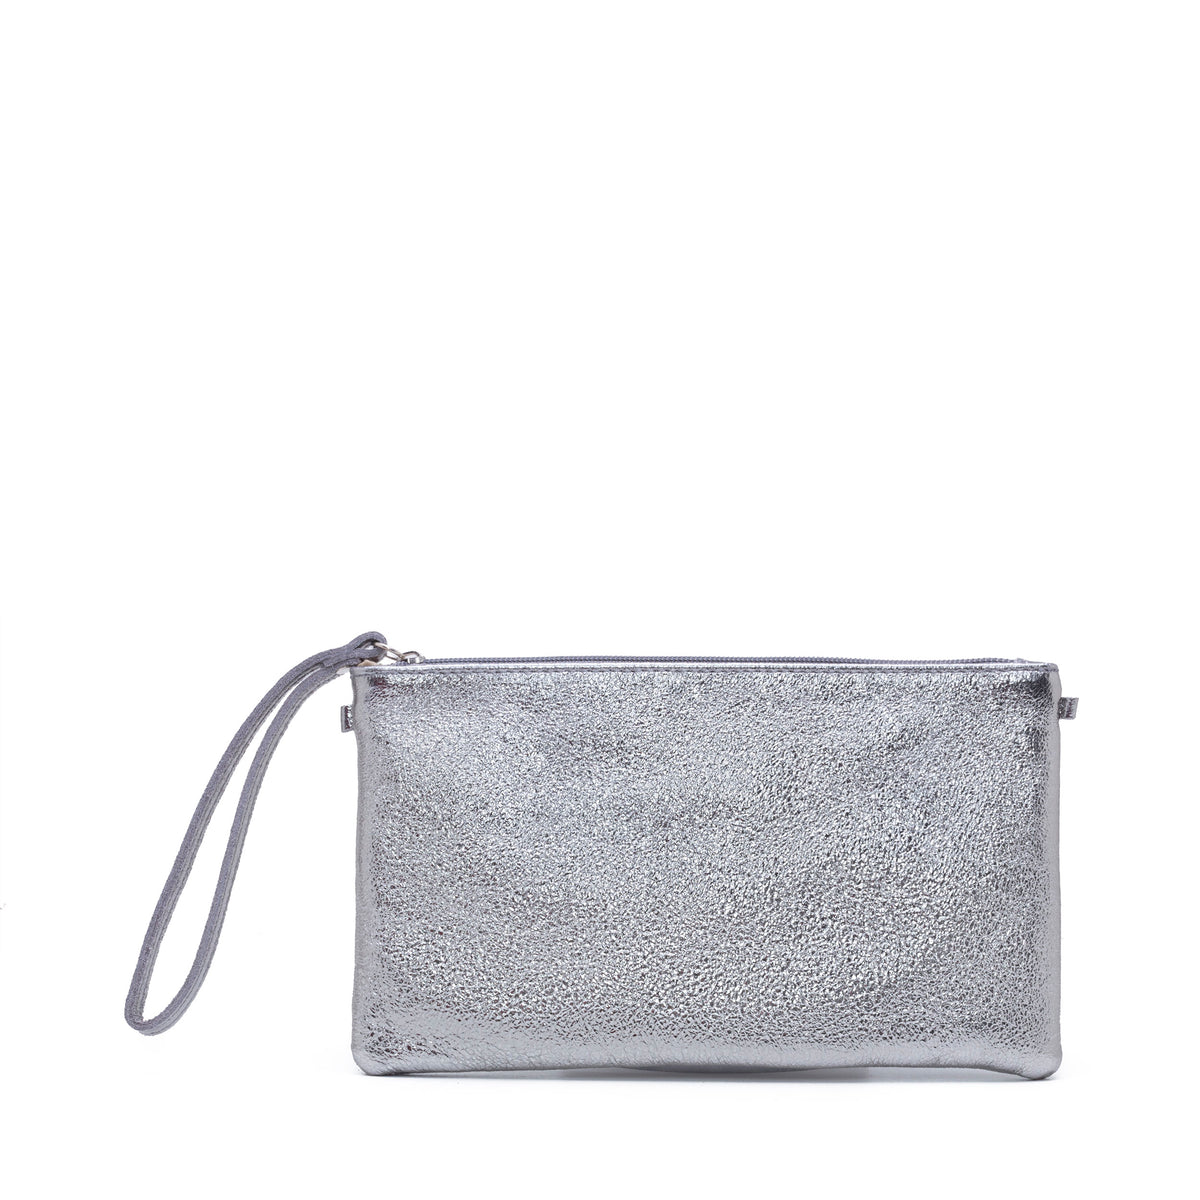 Express Woman Wristlet metallic Silver purse 9x4.5